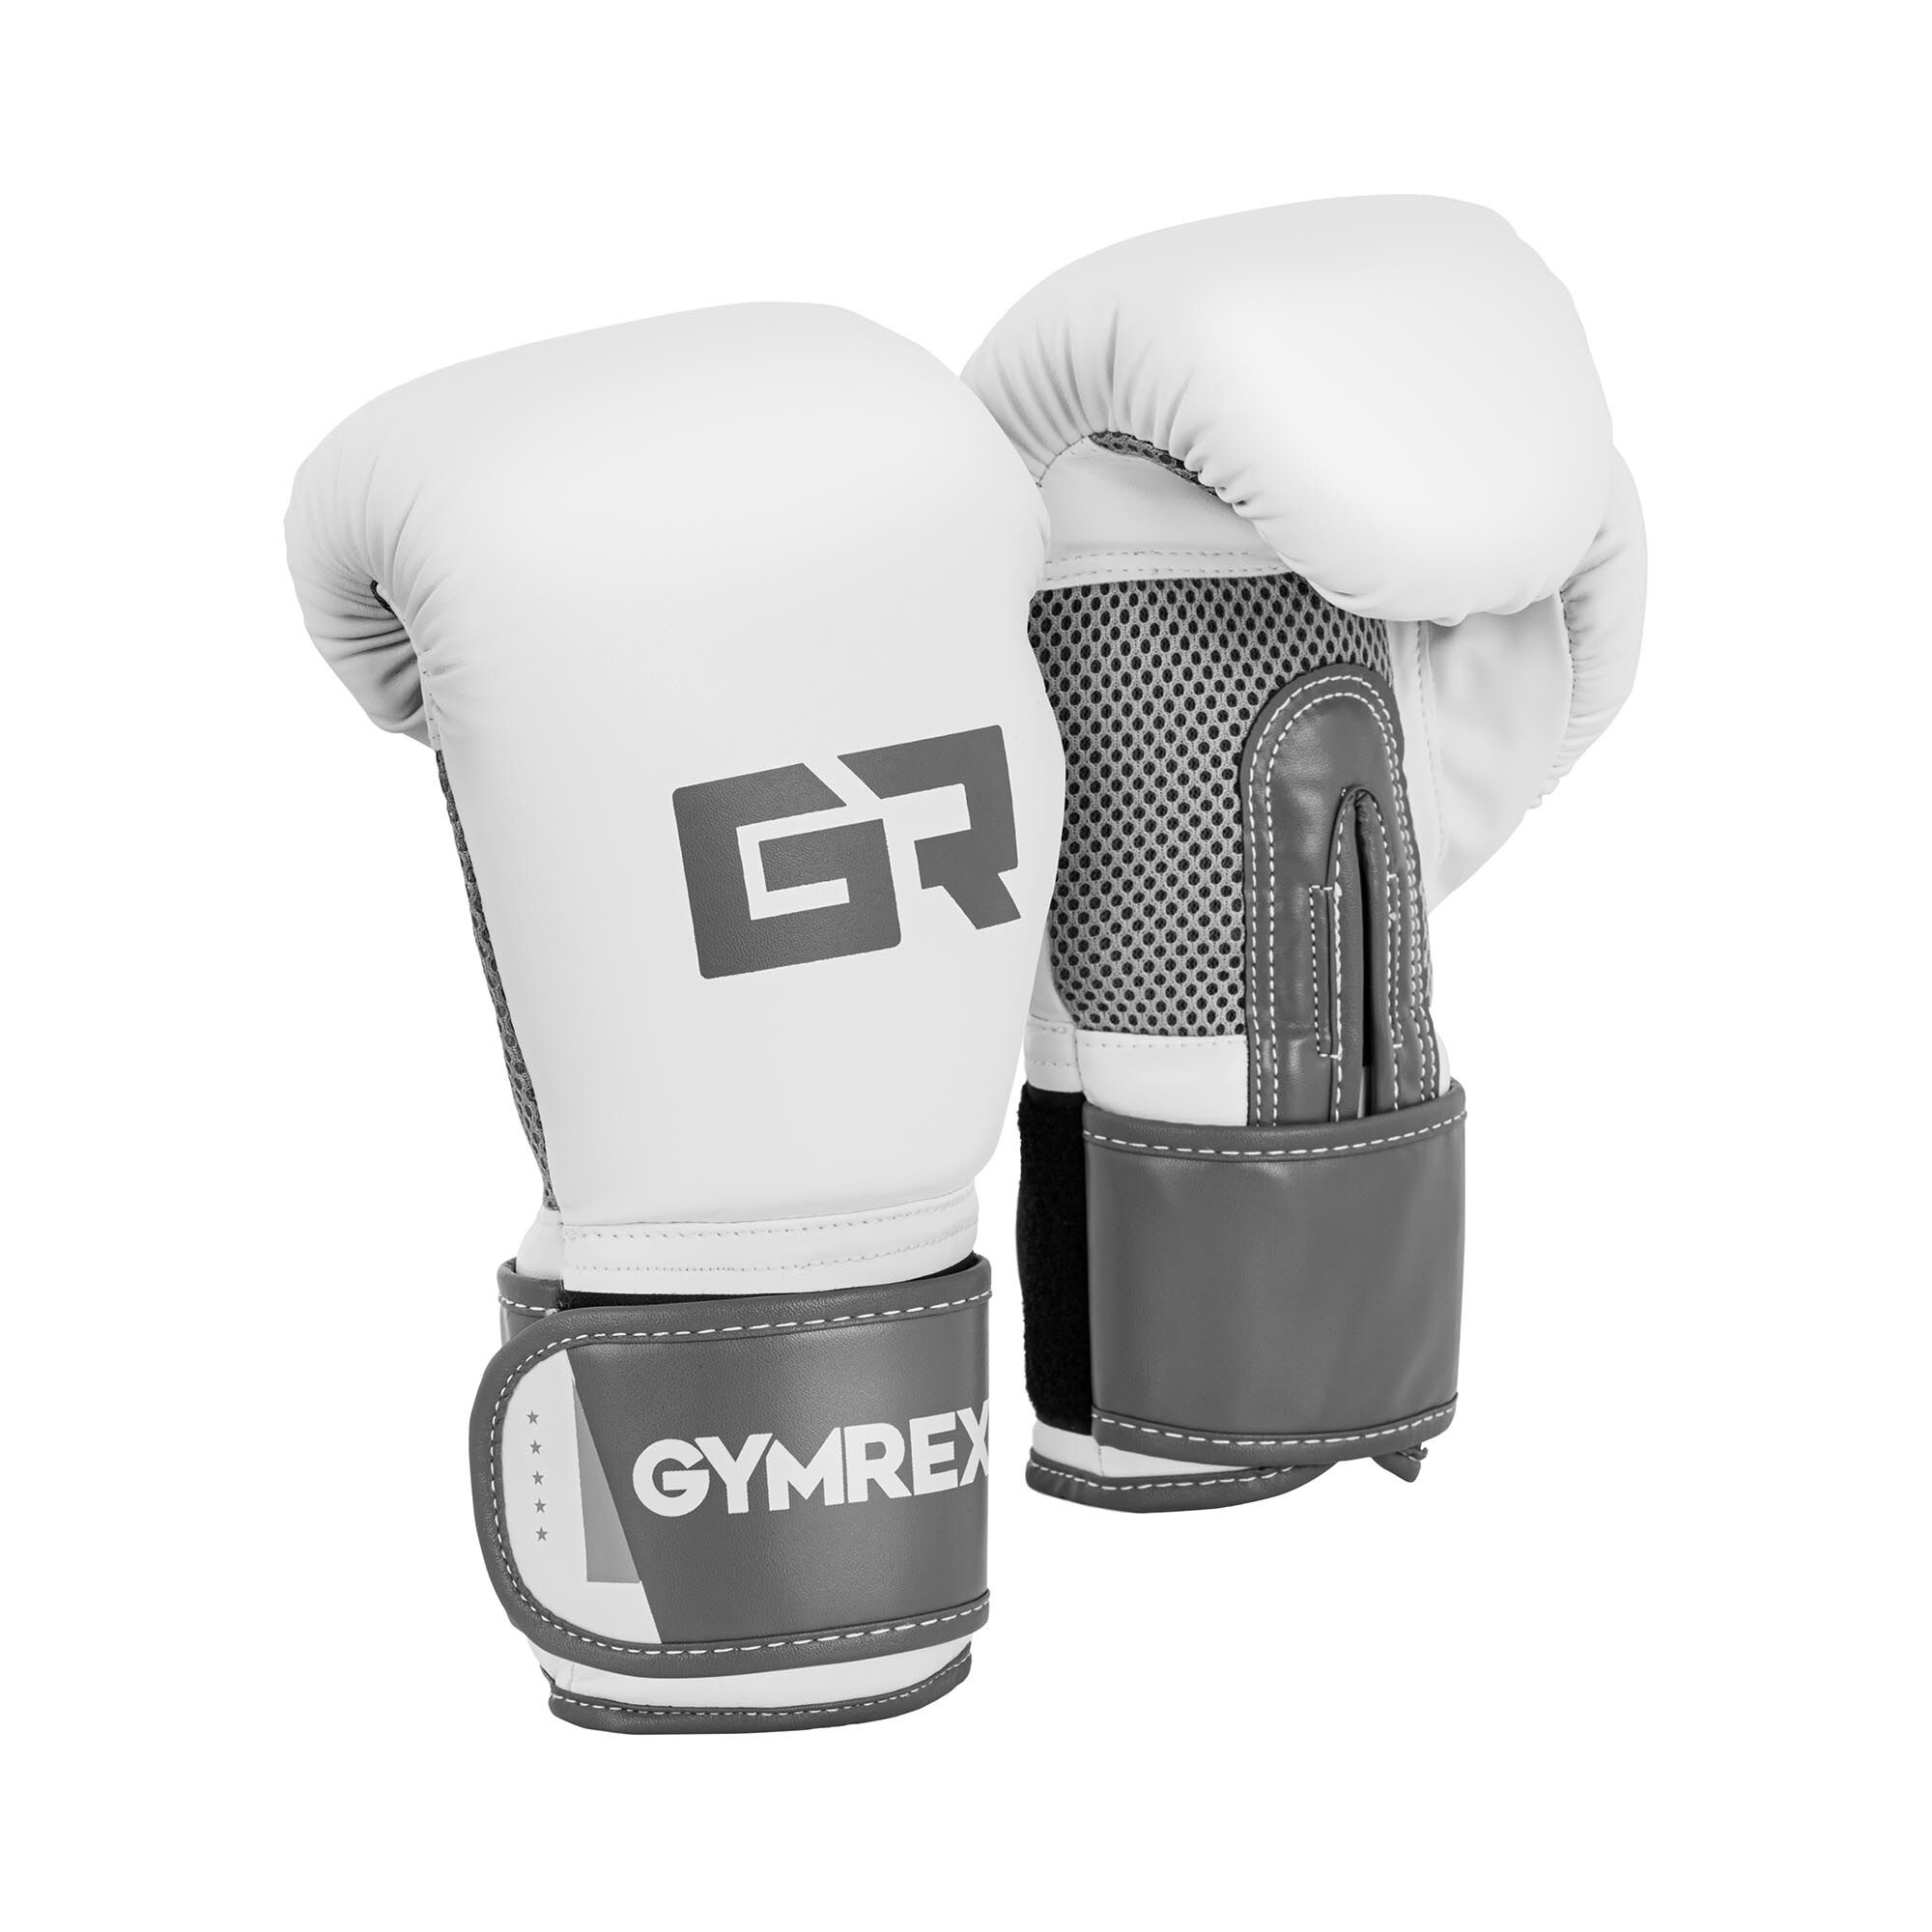 Gymrex Nyrkkeilyhanskat - 10 oz - mesh-sisus - valkoinen ja vaaleanharmaa/metalli